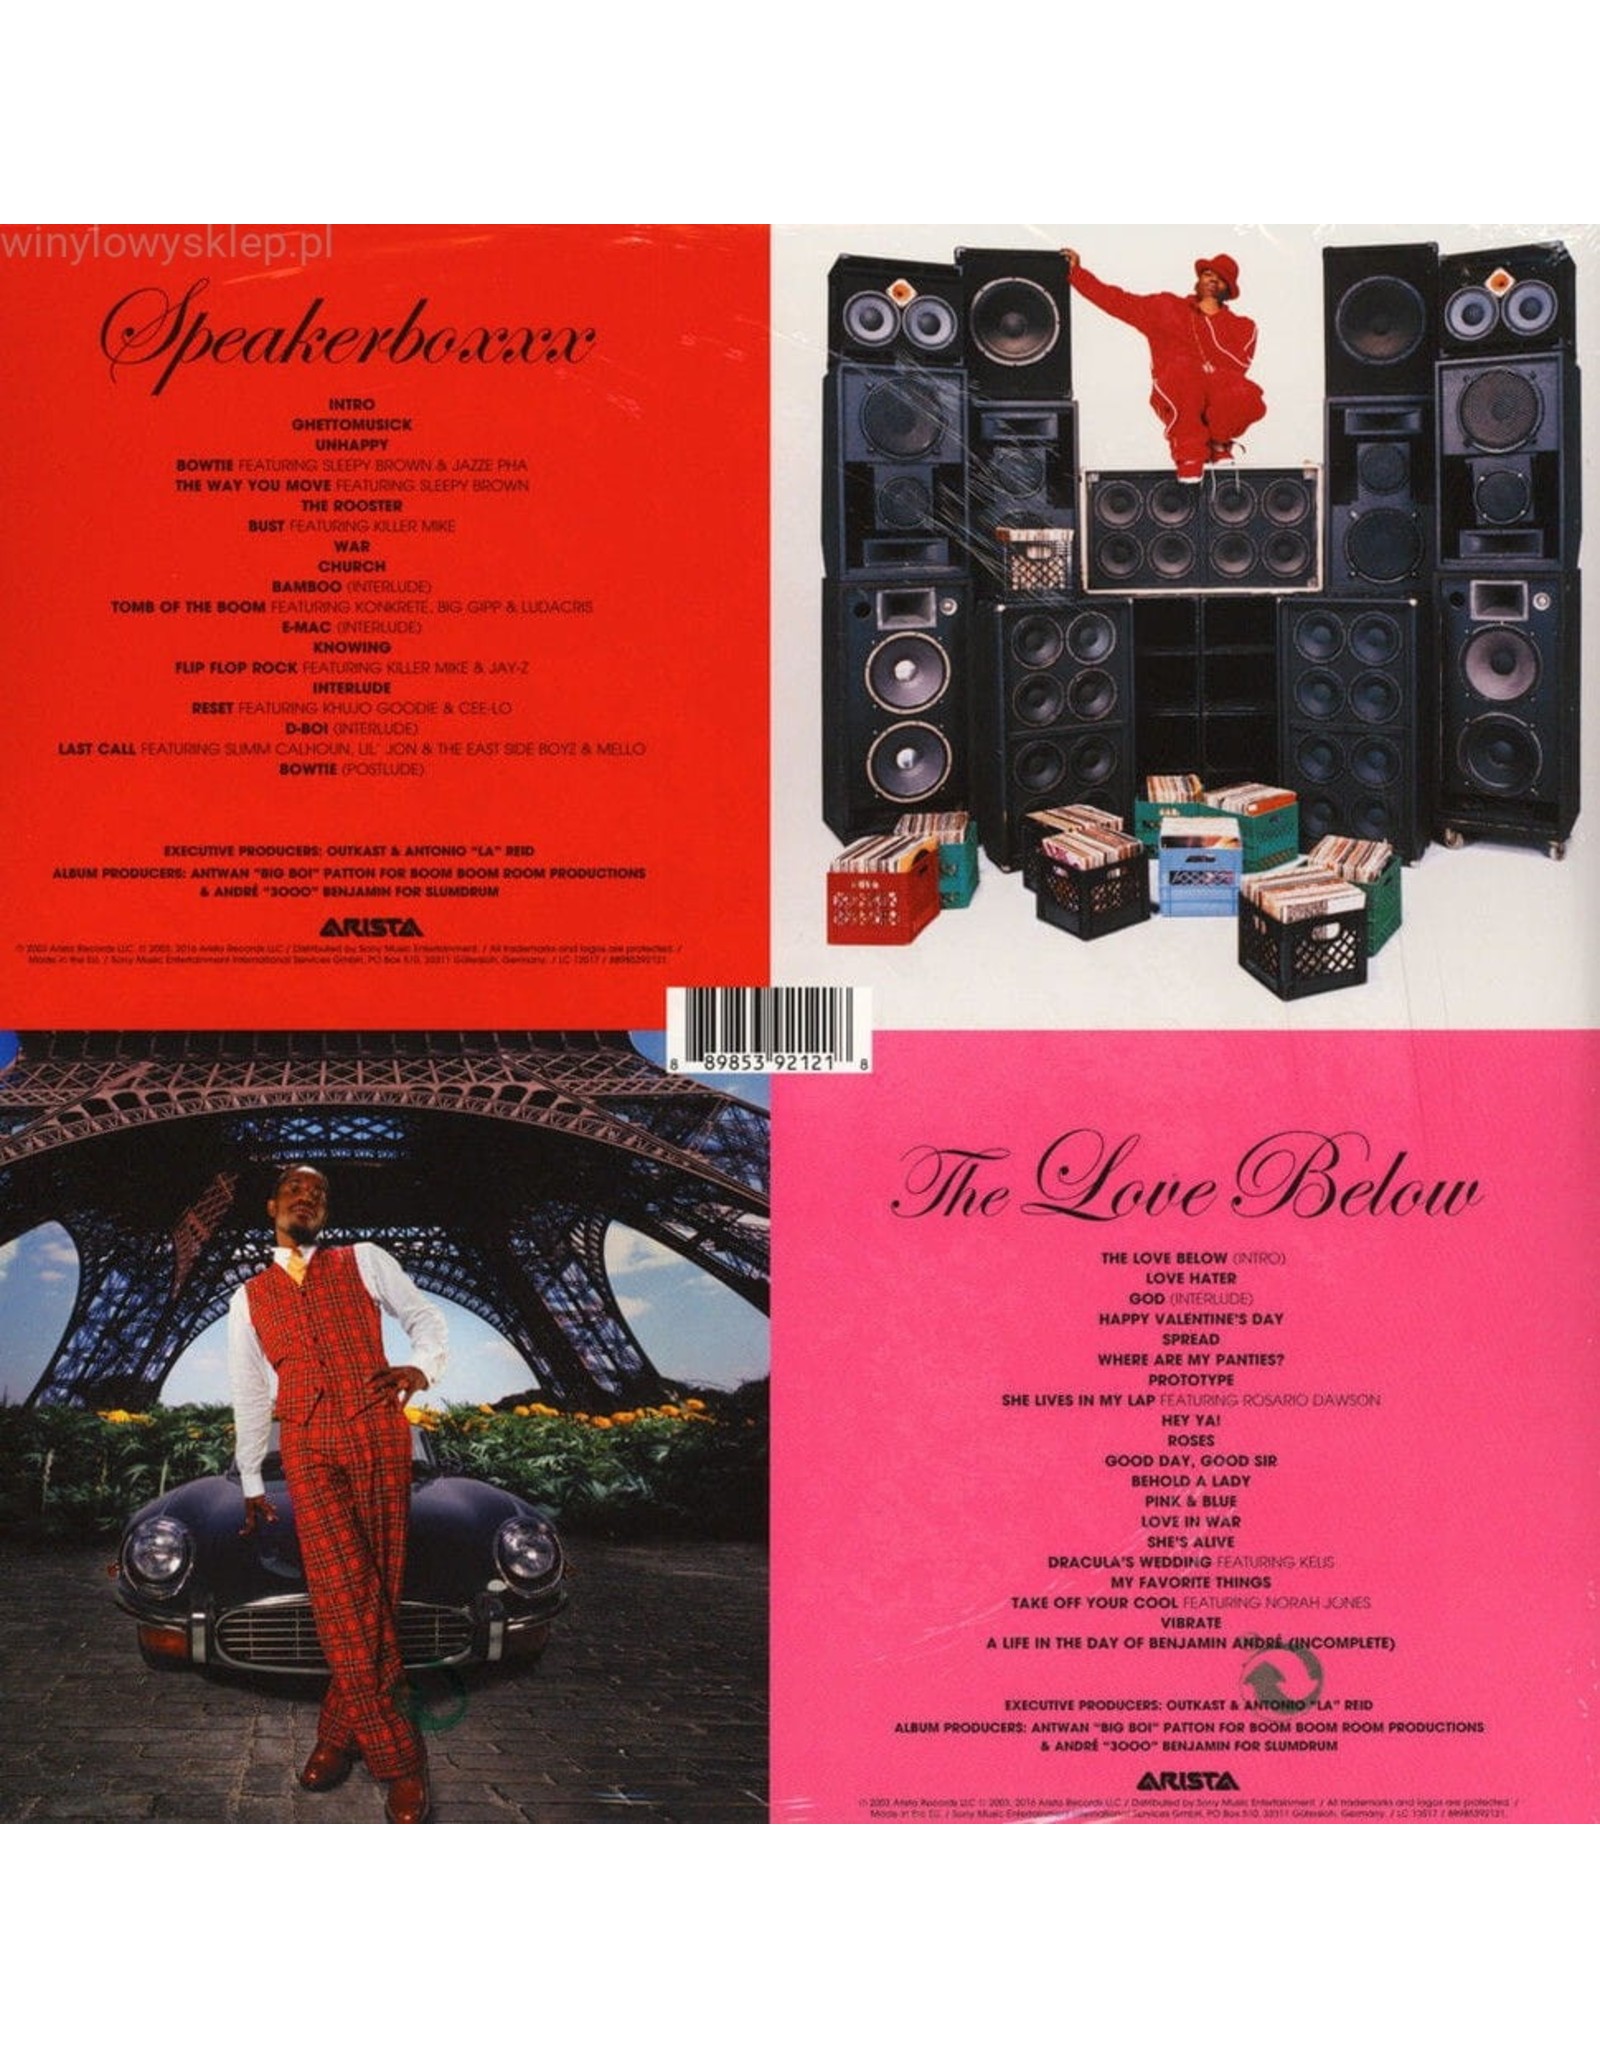 speakerboxx and the love below full album